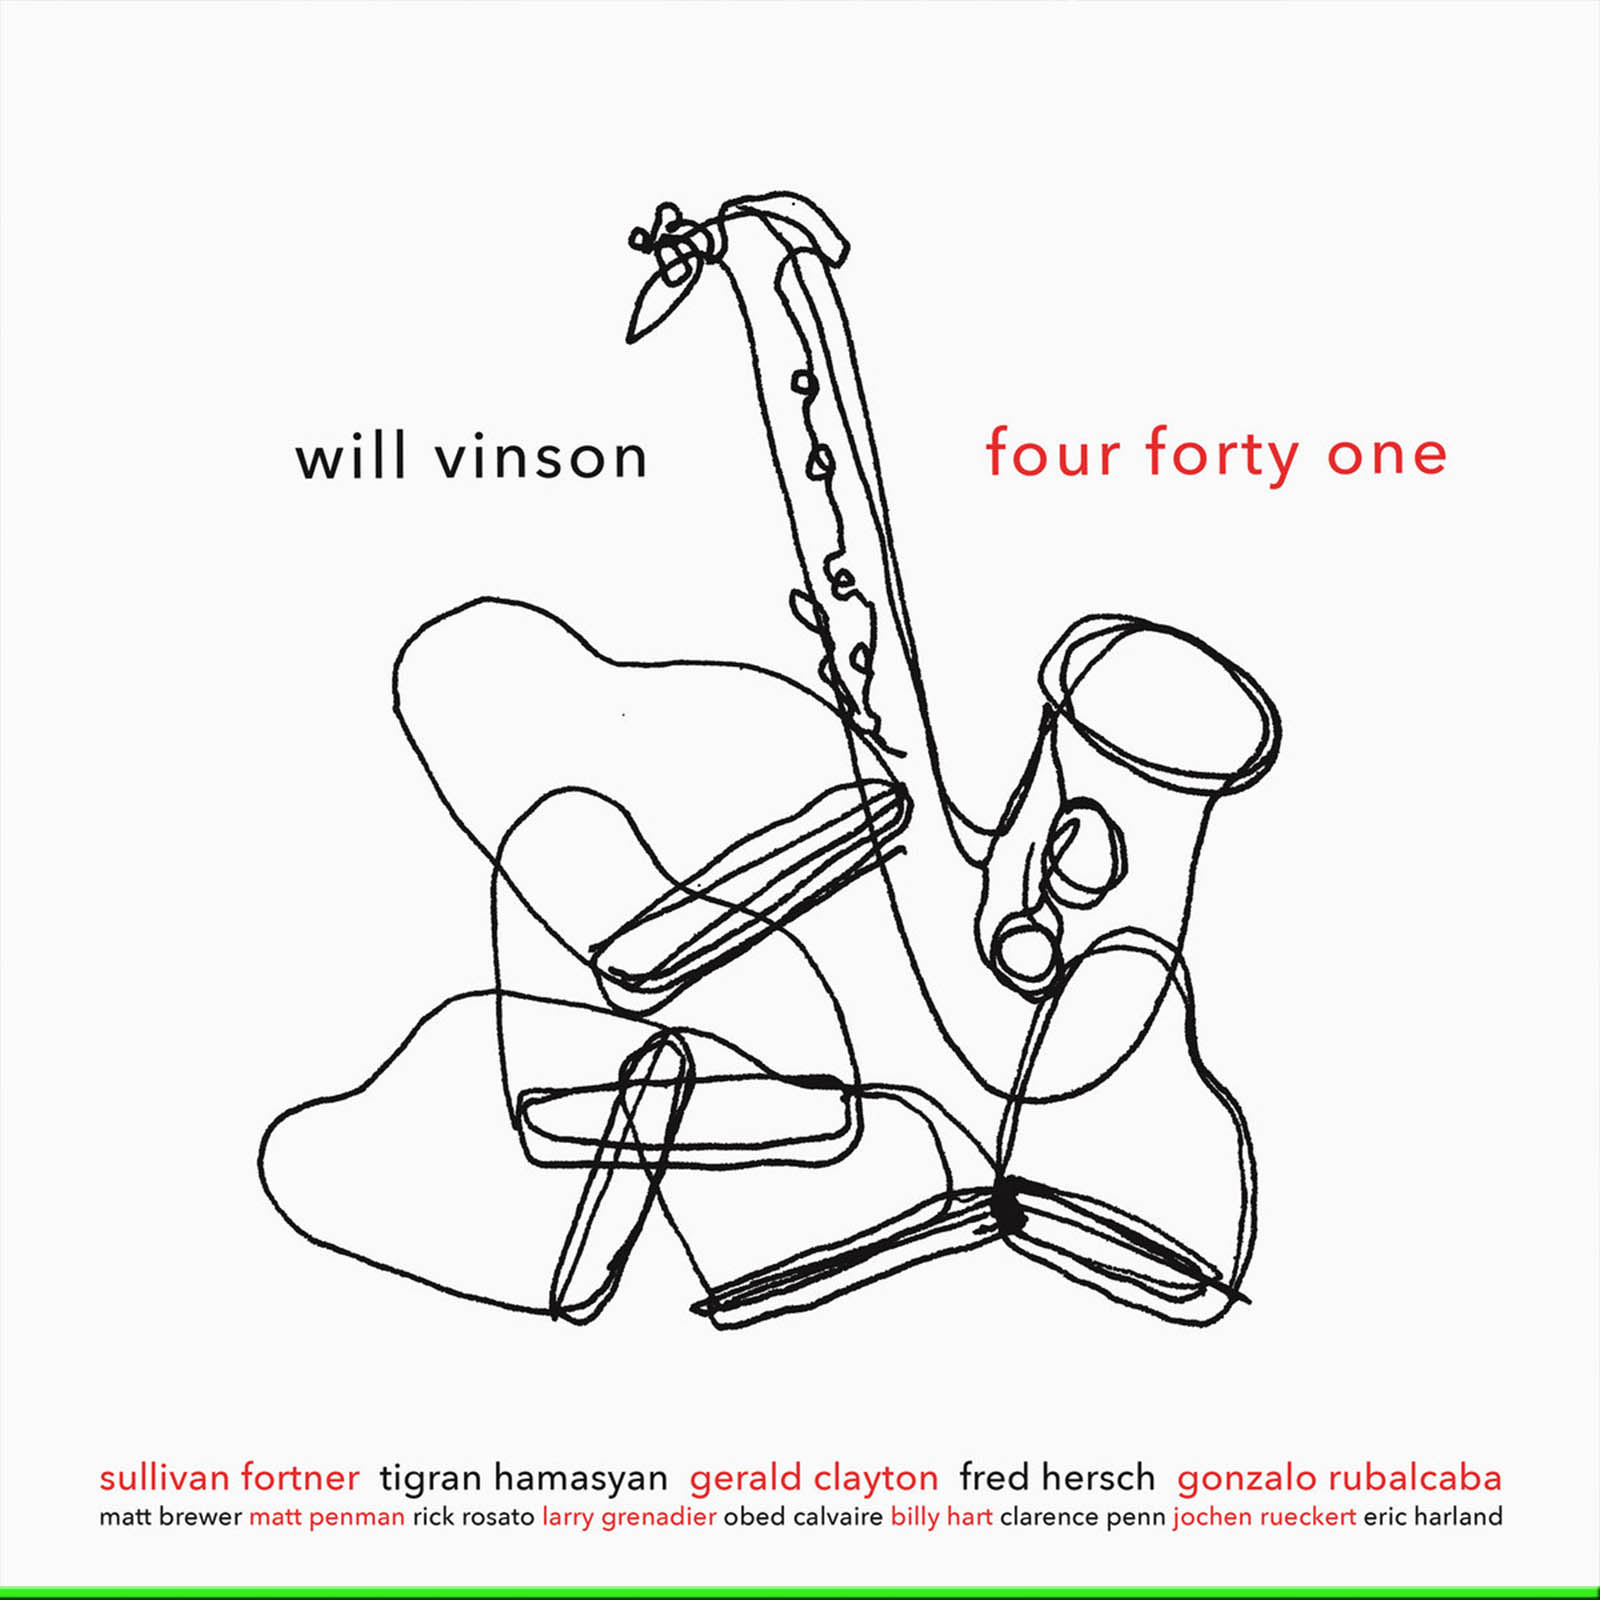 will-vinson-modern-jazz-today